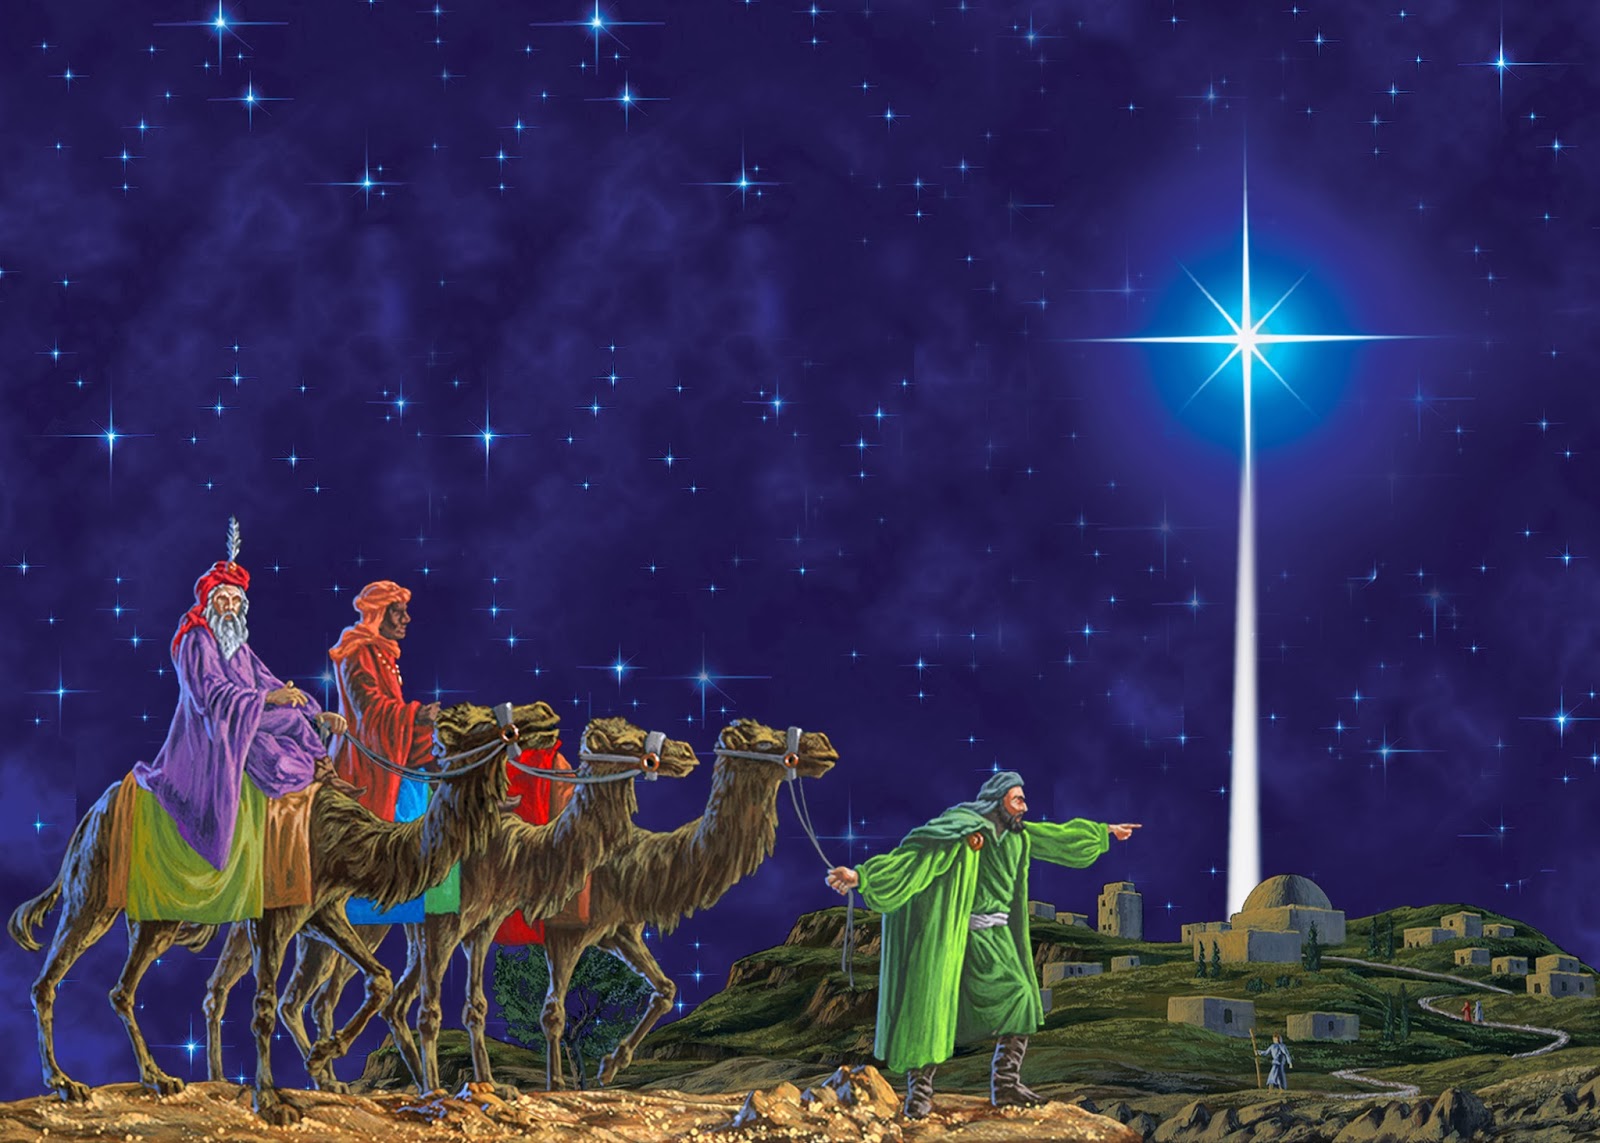 Banco de Imágenes Gratis: 33 imágenes del Nacimiento de Jesús, Pesebres,  Sagrada Familia, Estrella de Belém, Reyes Magos y Natividad.